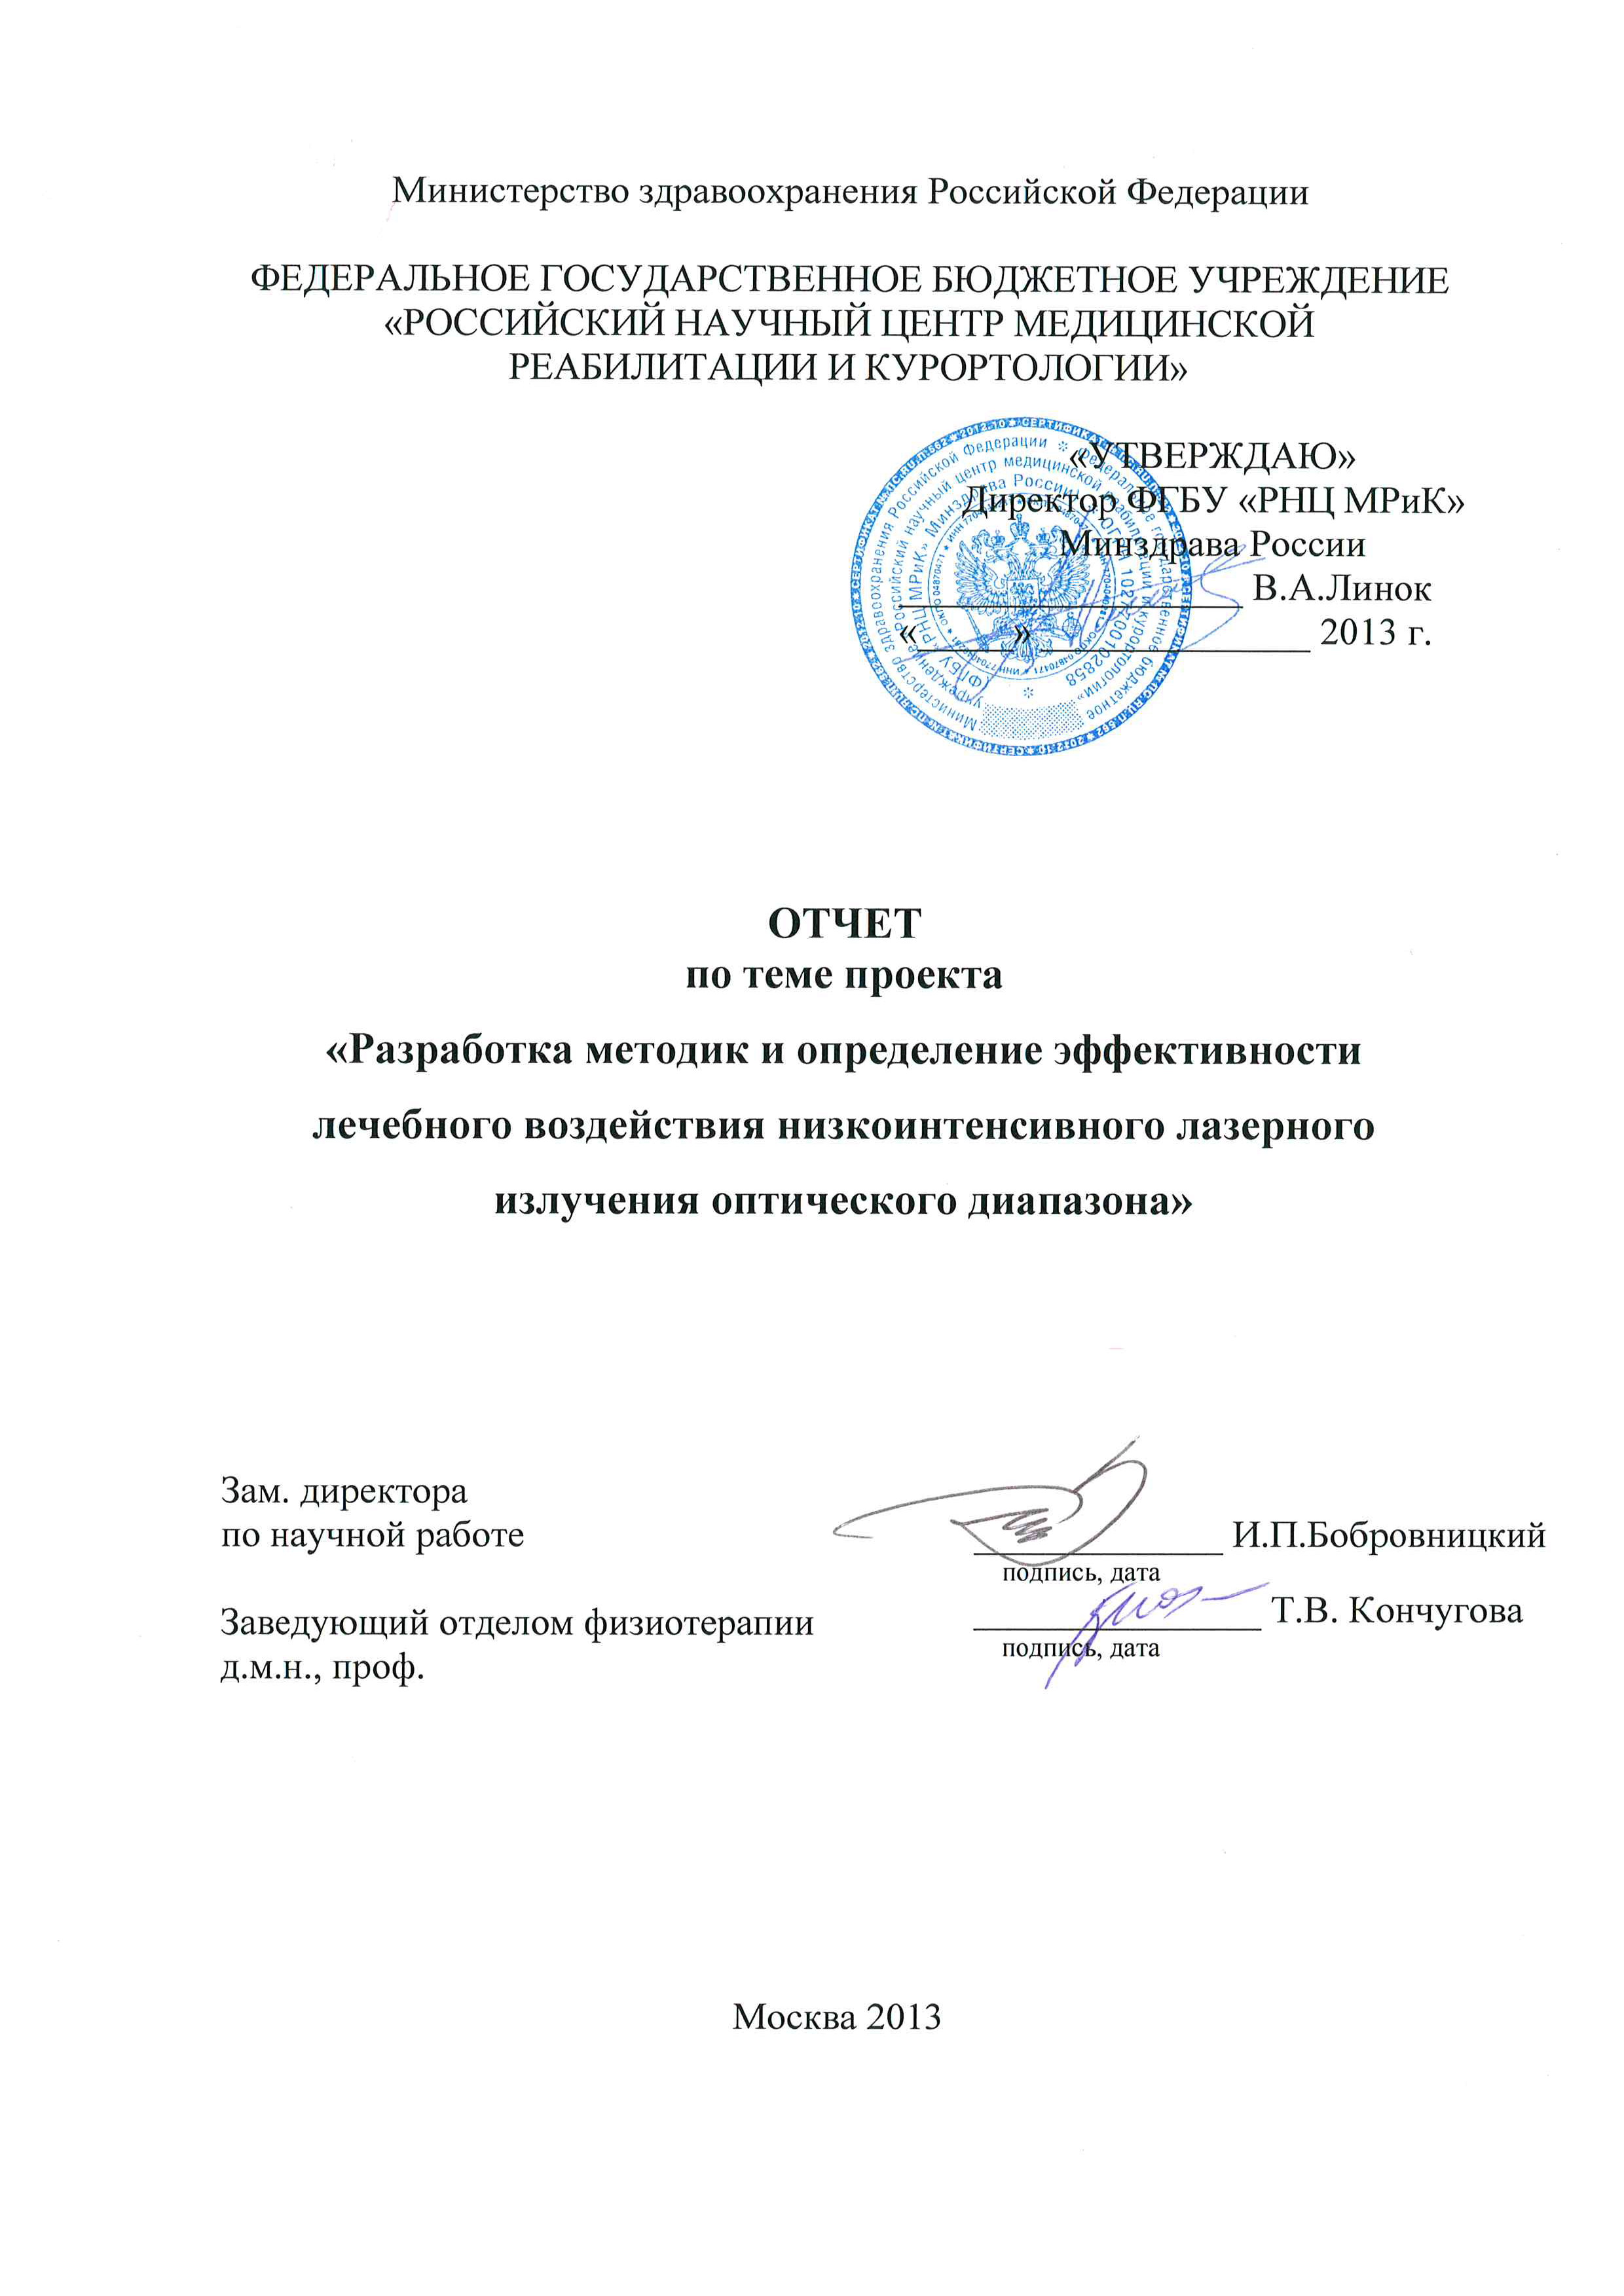 2013г.: ФГБУ РНЦ Медицинской реабилитации и курортологии